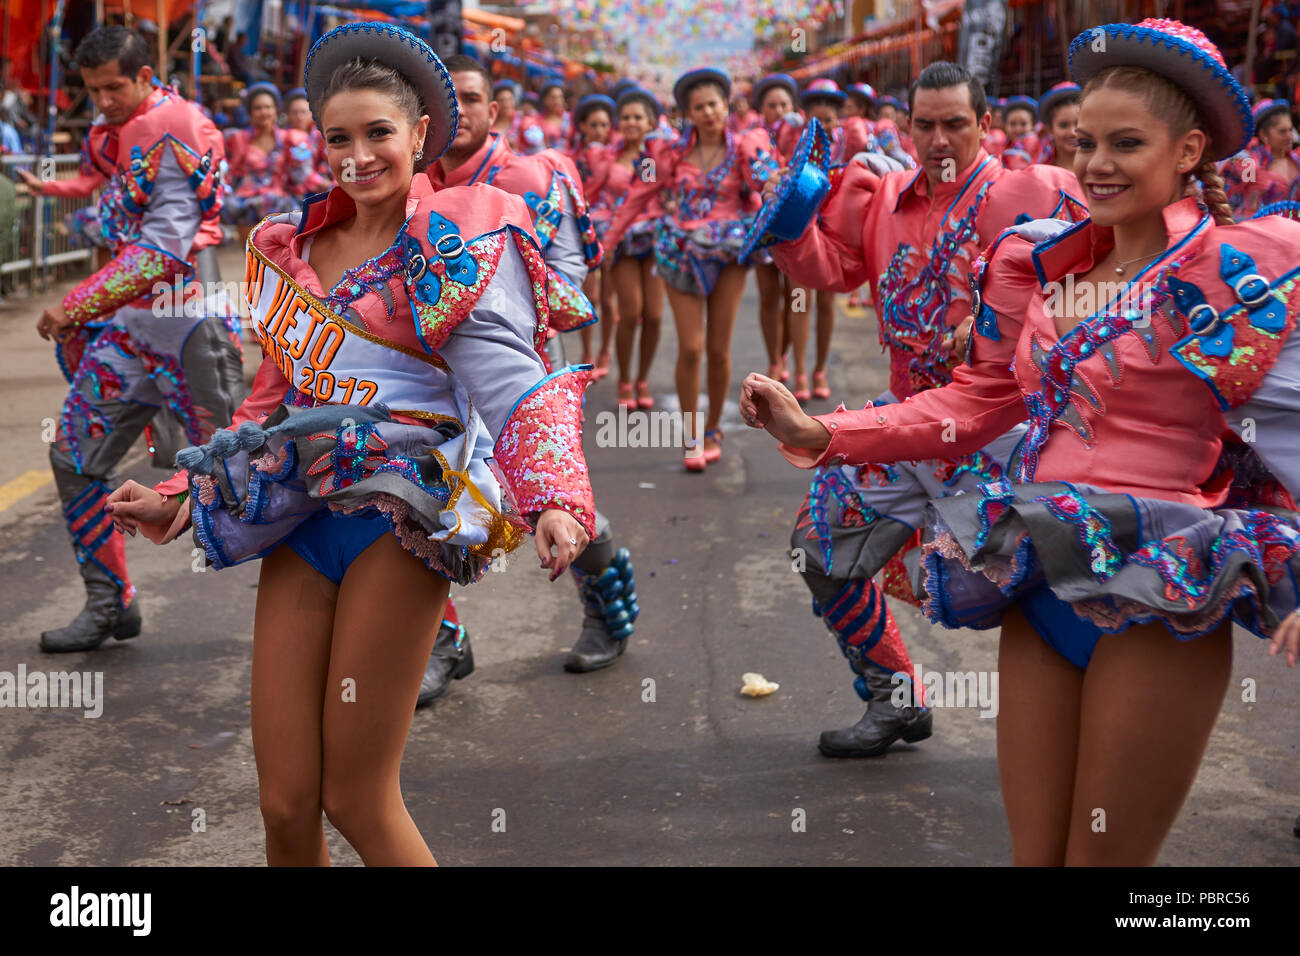 caporales-bailarines-en-trajes-adornados-de-realizar-ya-que-desfilan-por-la-ciudad-minera-de-oruro-en-el-altiplano-de-bolivia-durante-el-carnaval-anual-pbrc56.jpg